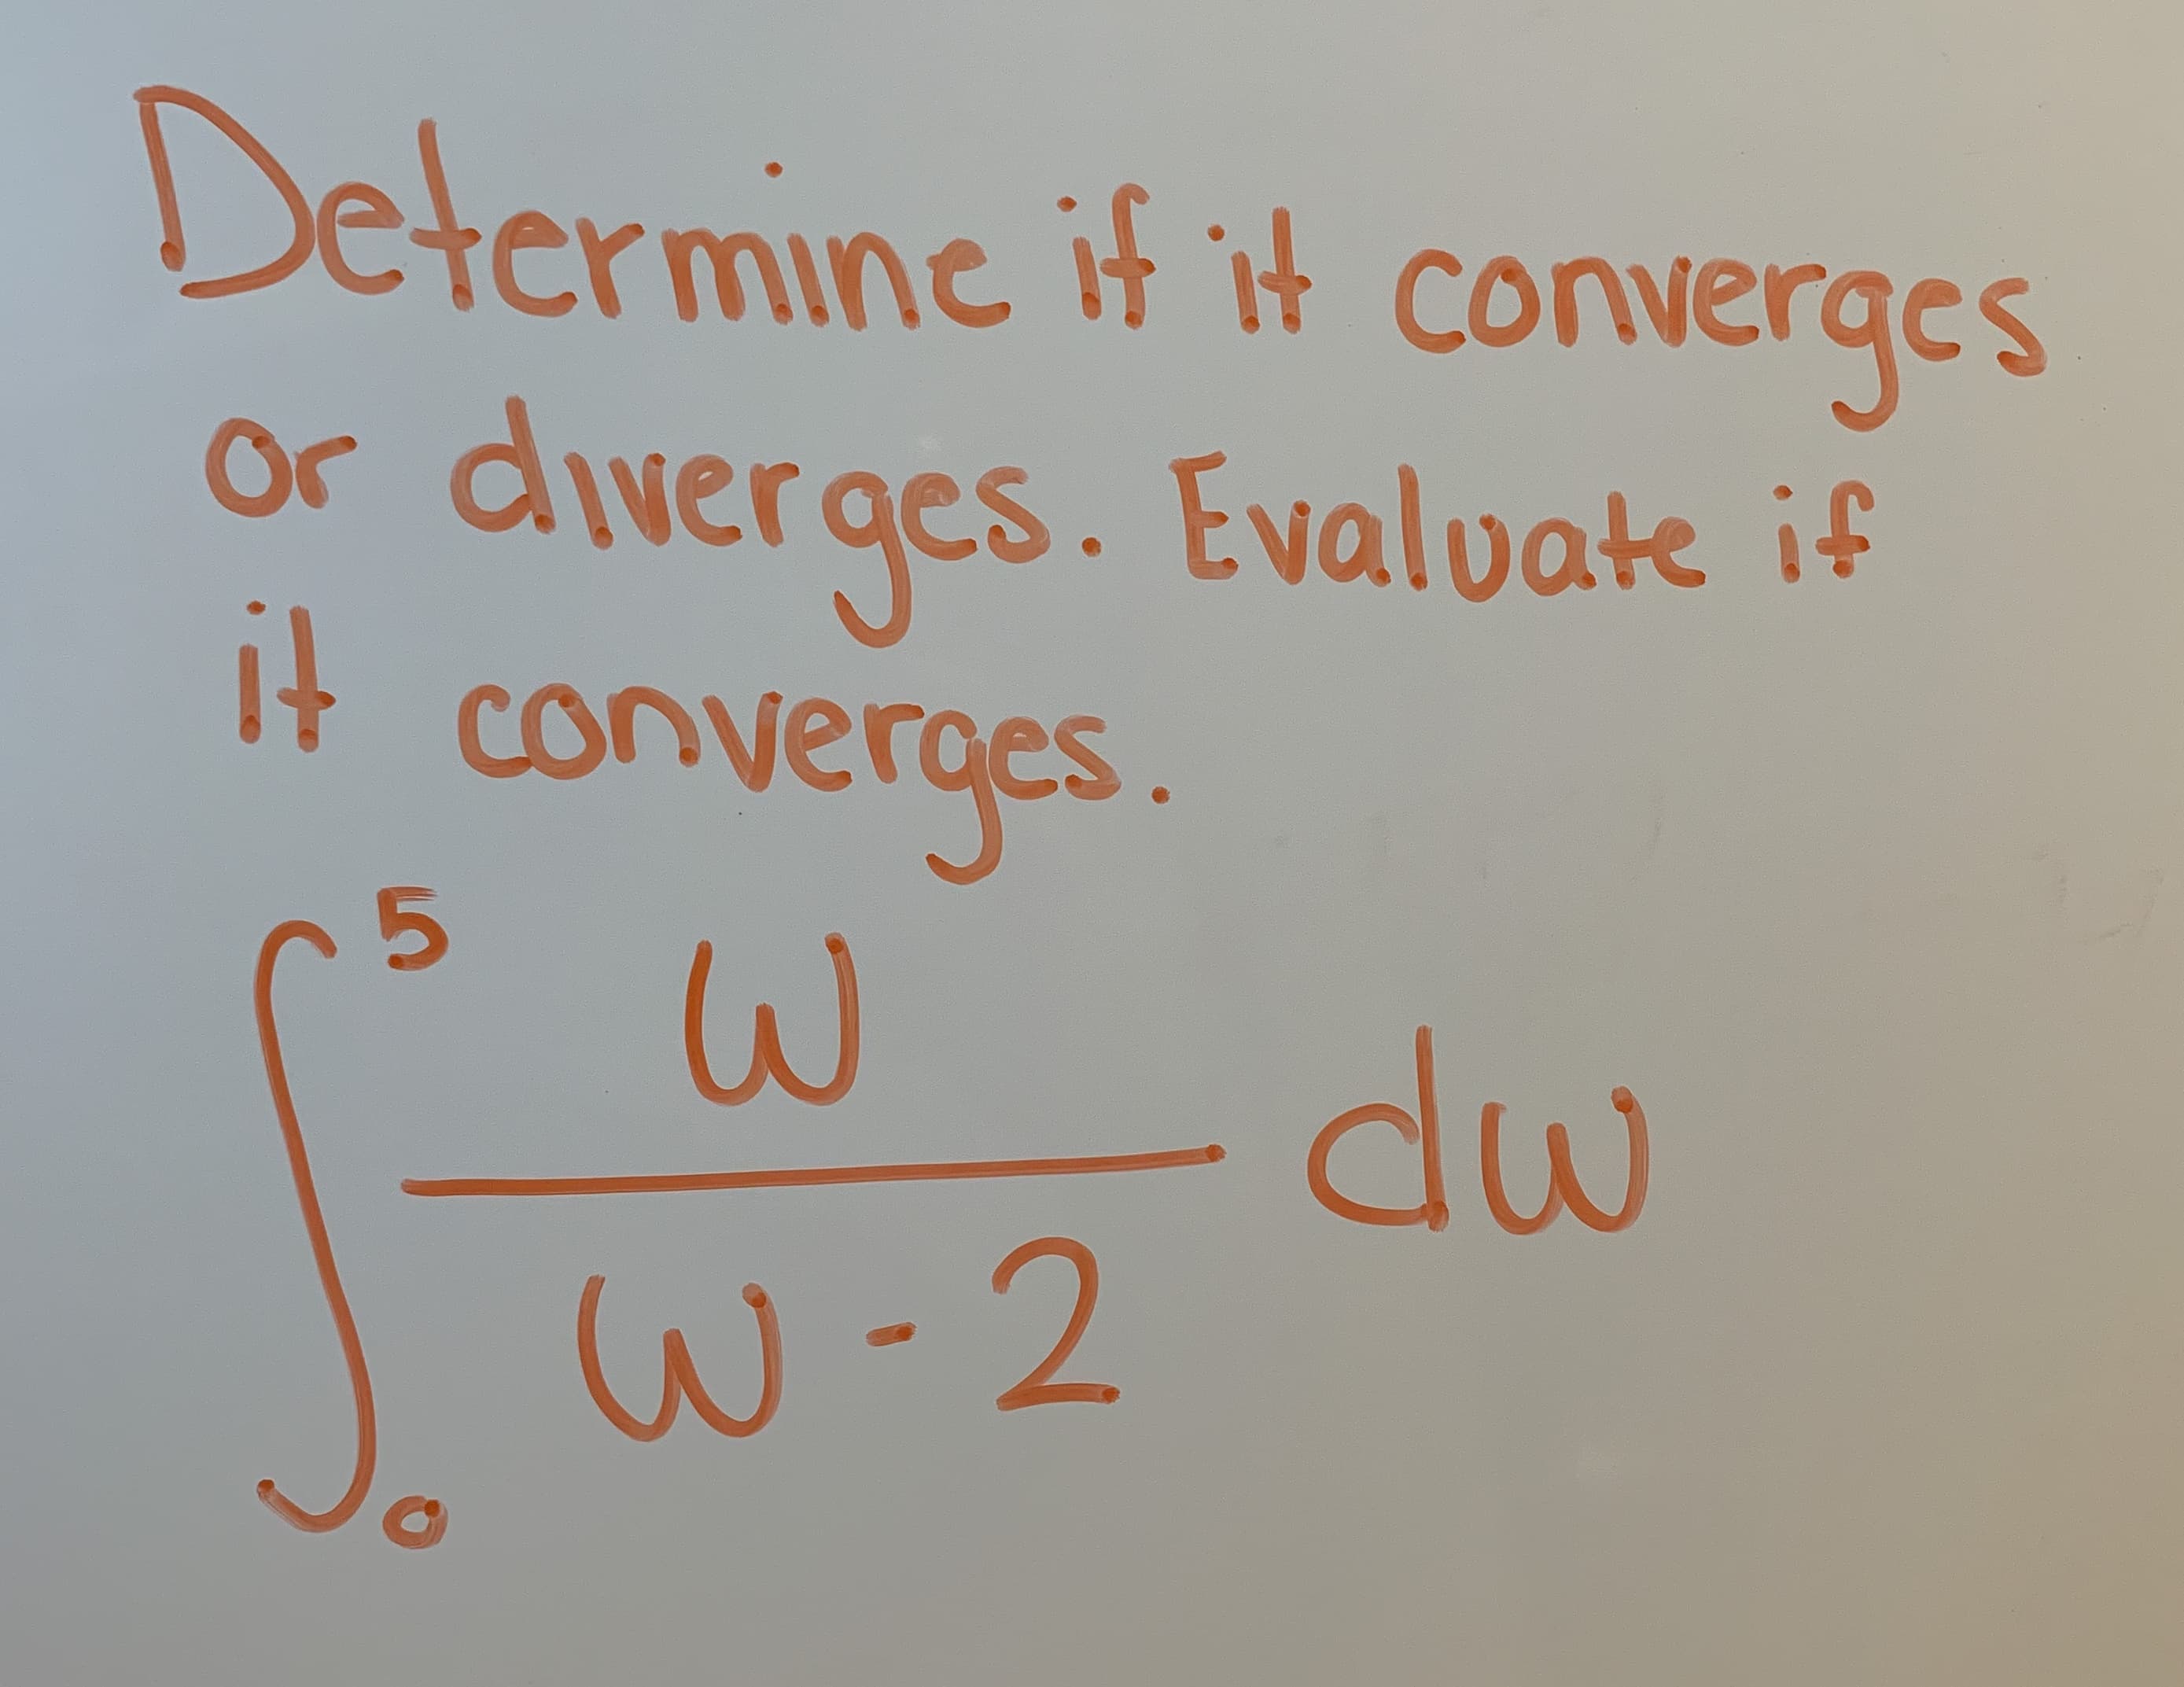 Determine if it converącs
or dweraes. Evaloate if
it converges
5
dw
